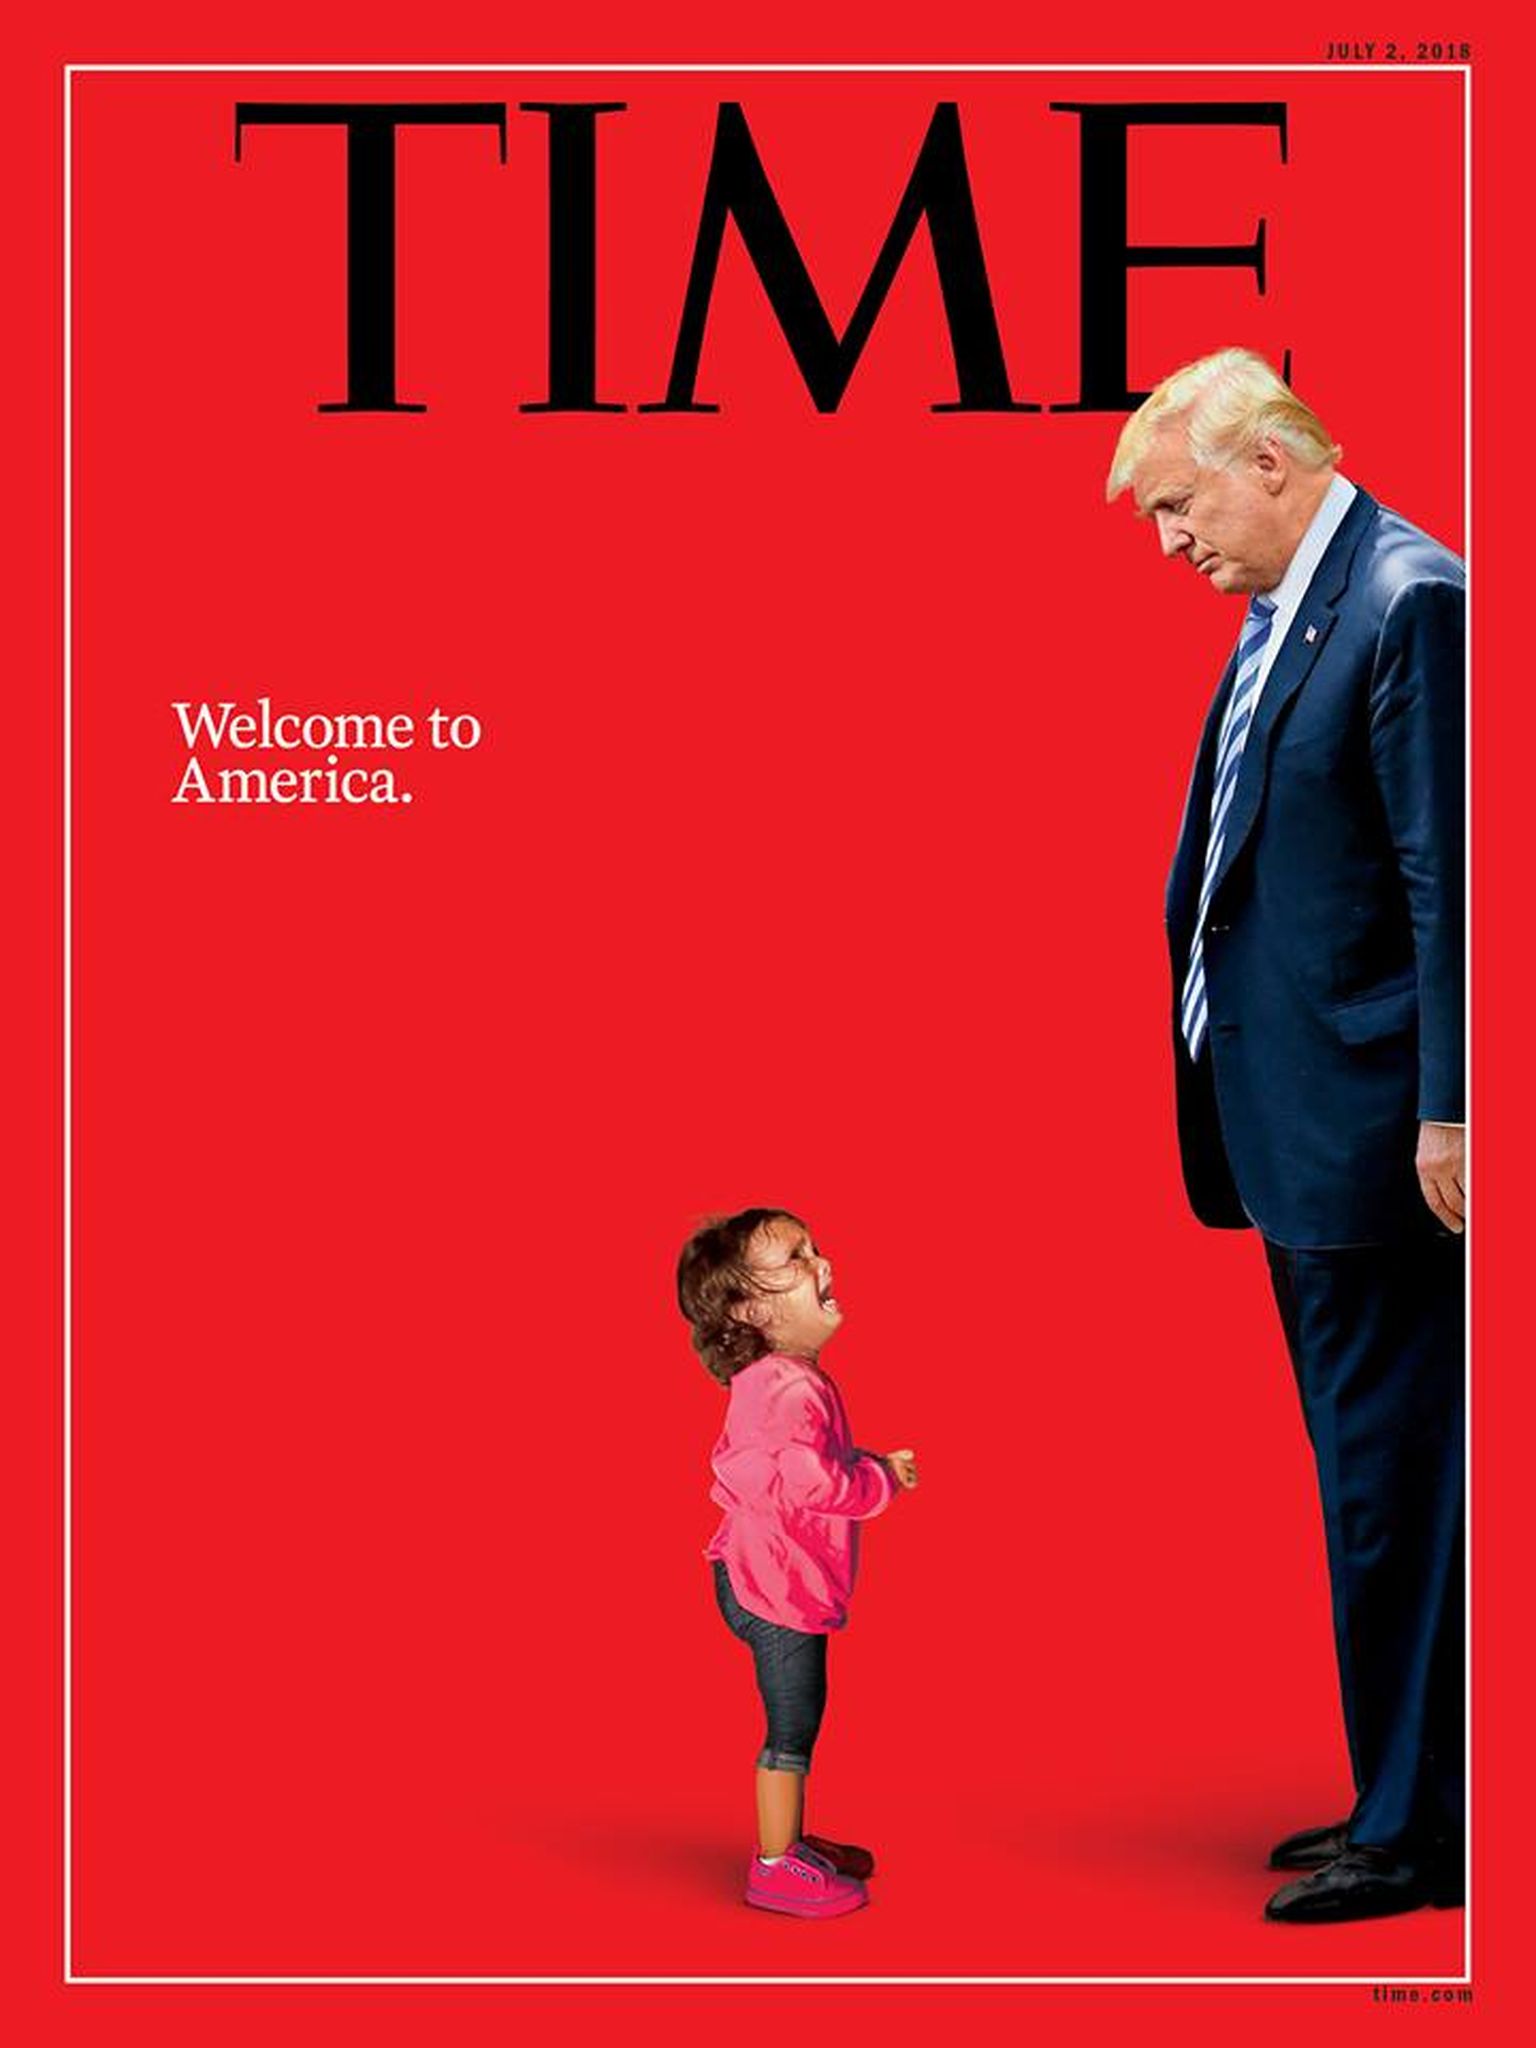 Ajakirja Time esikaas, kus on kujutatud Donald Trumpi ja nutvat tüdrukut.